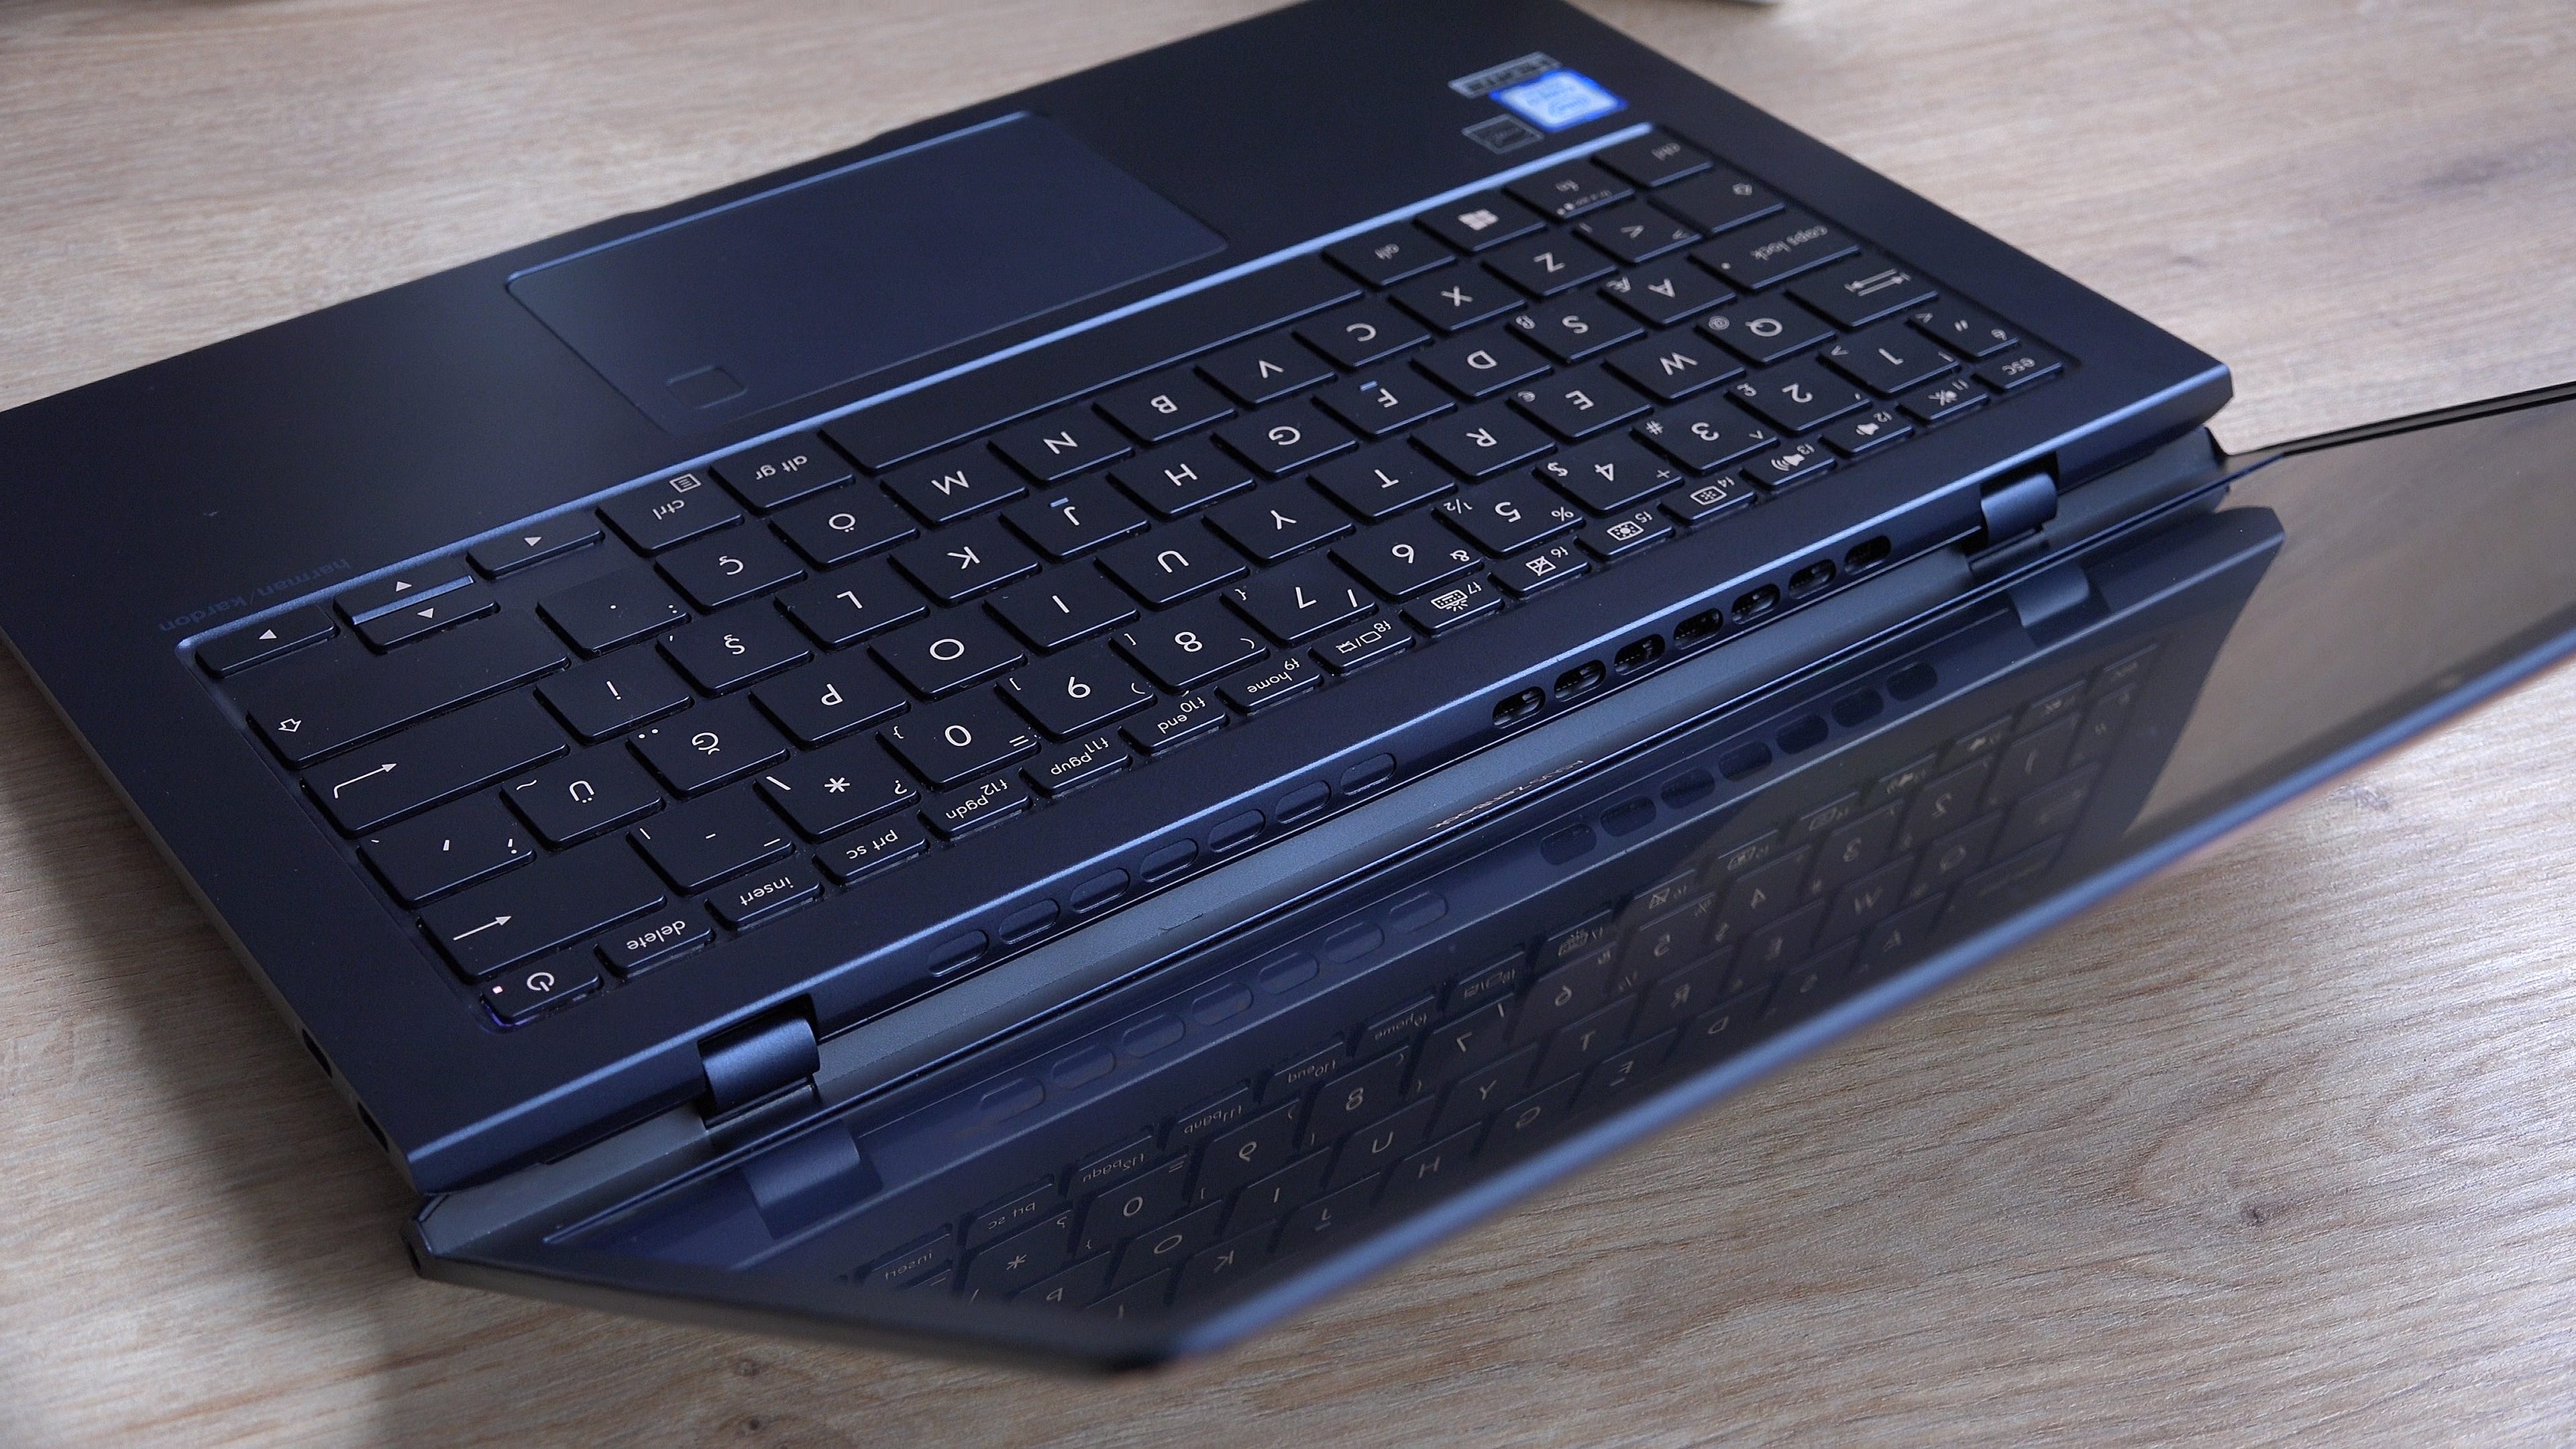 Macbook Pro'ya alternatif olabilir mi? 'Asus Zenbook S UX391U incelemesi'